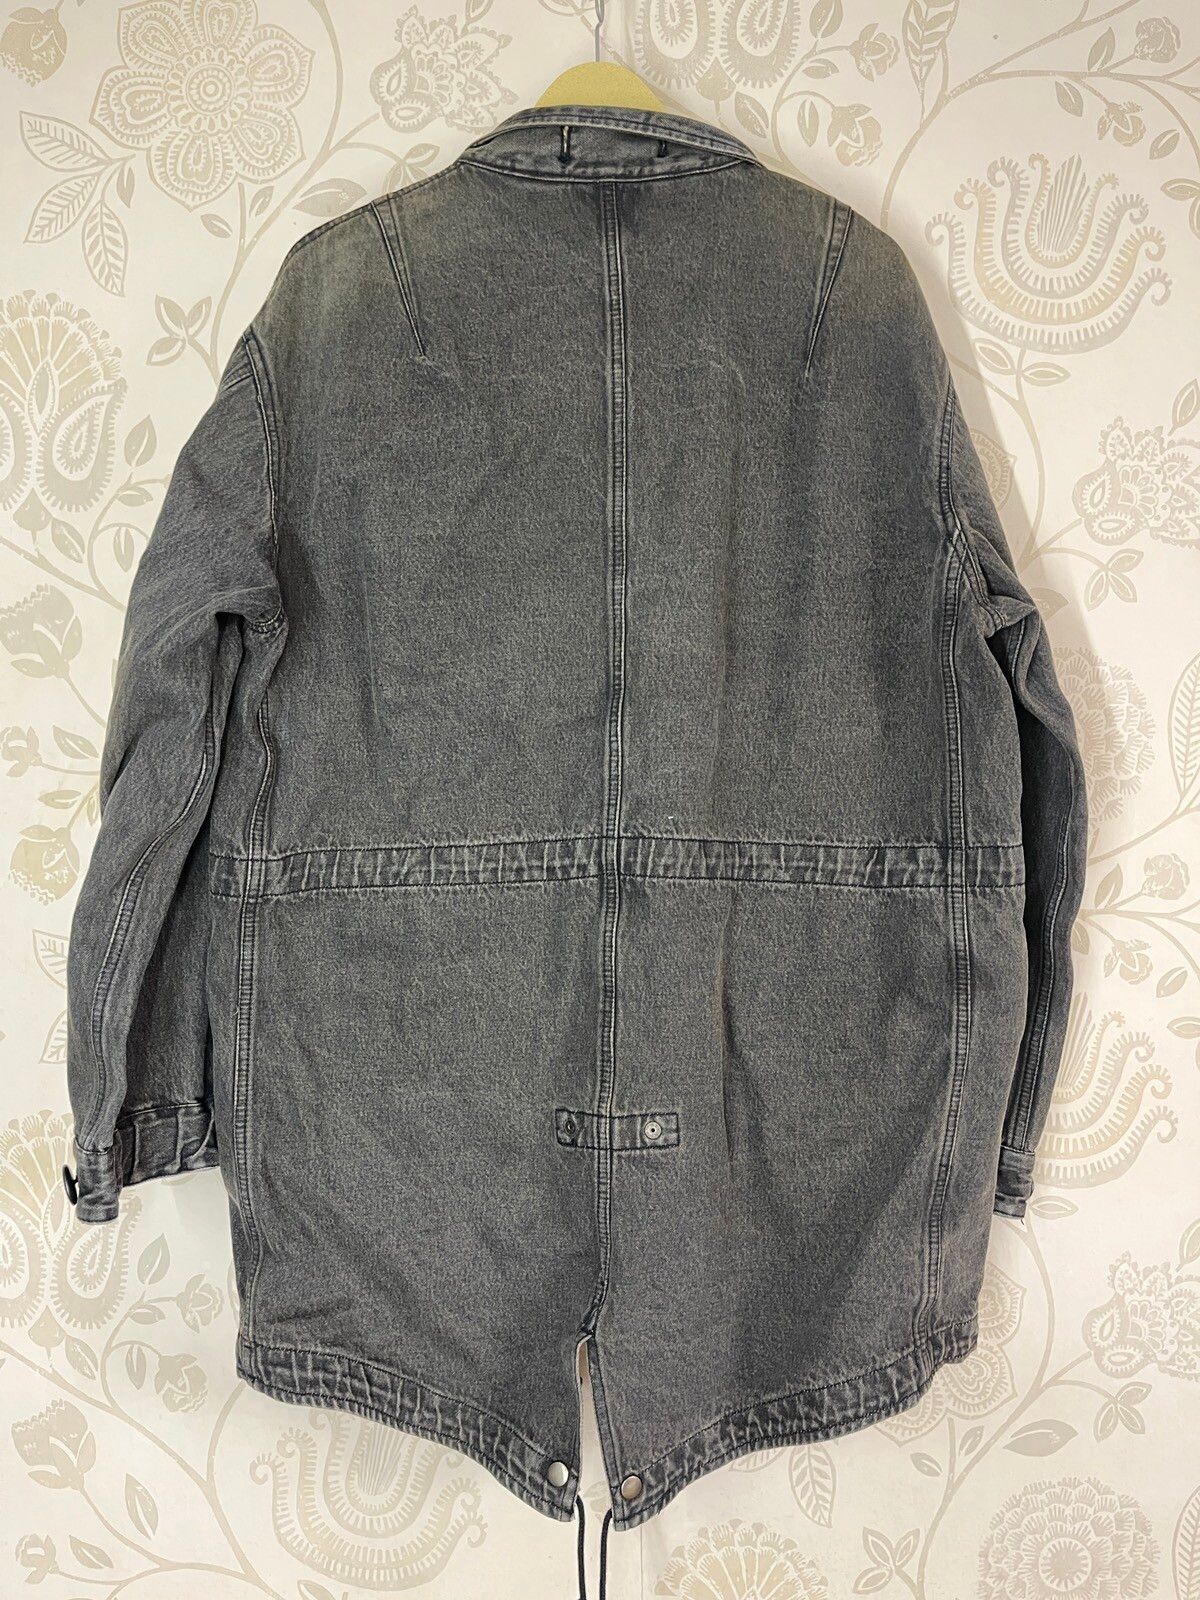 Denim Tactical Jacket PPFM 4 Pockets Vintage Made In Japan - 2